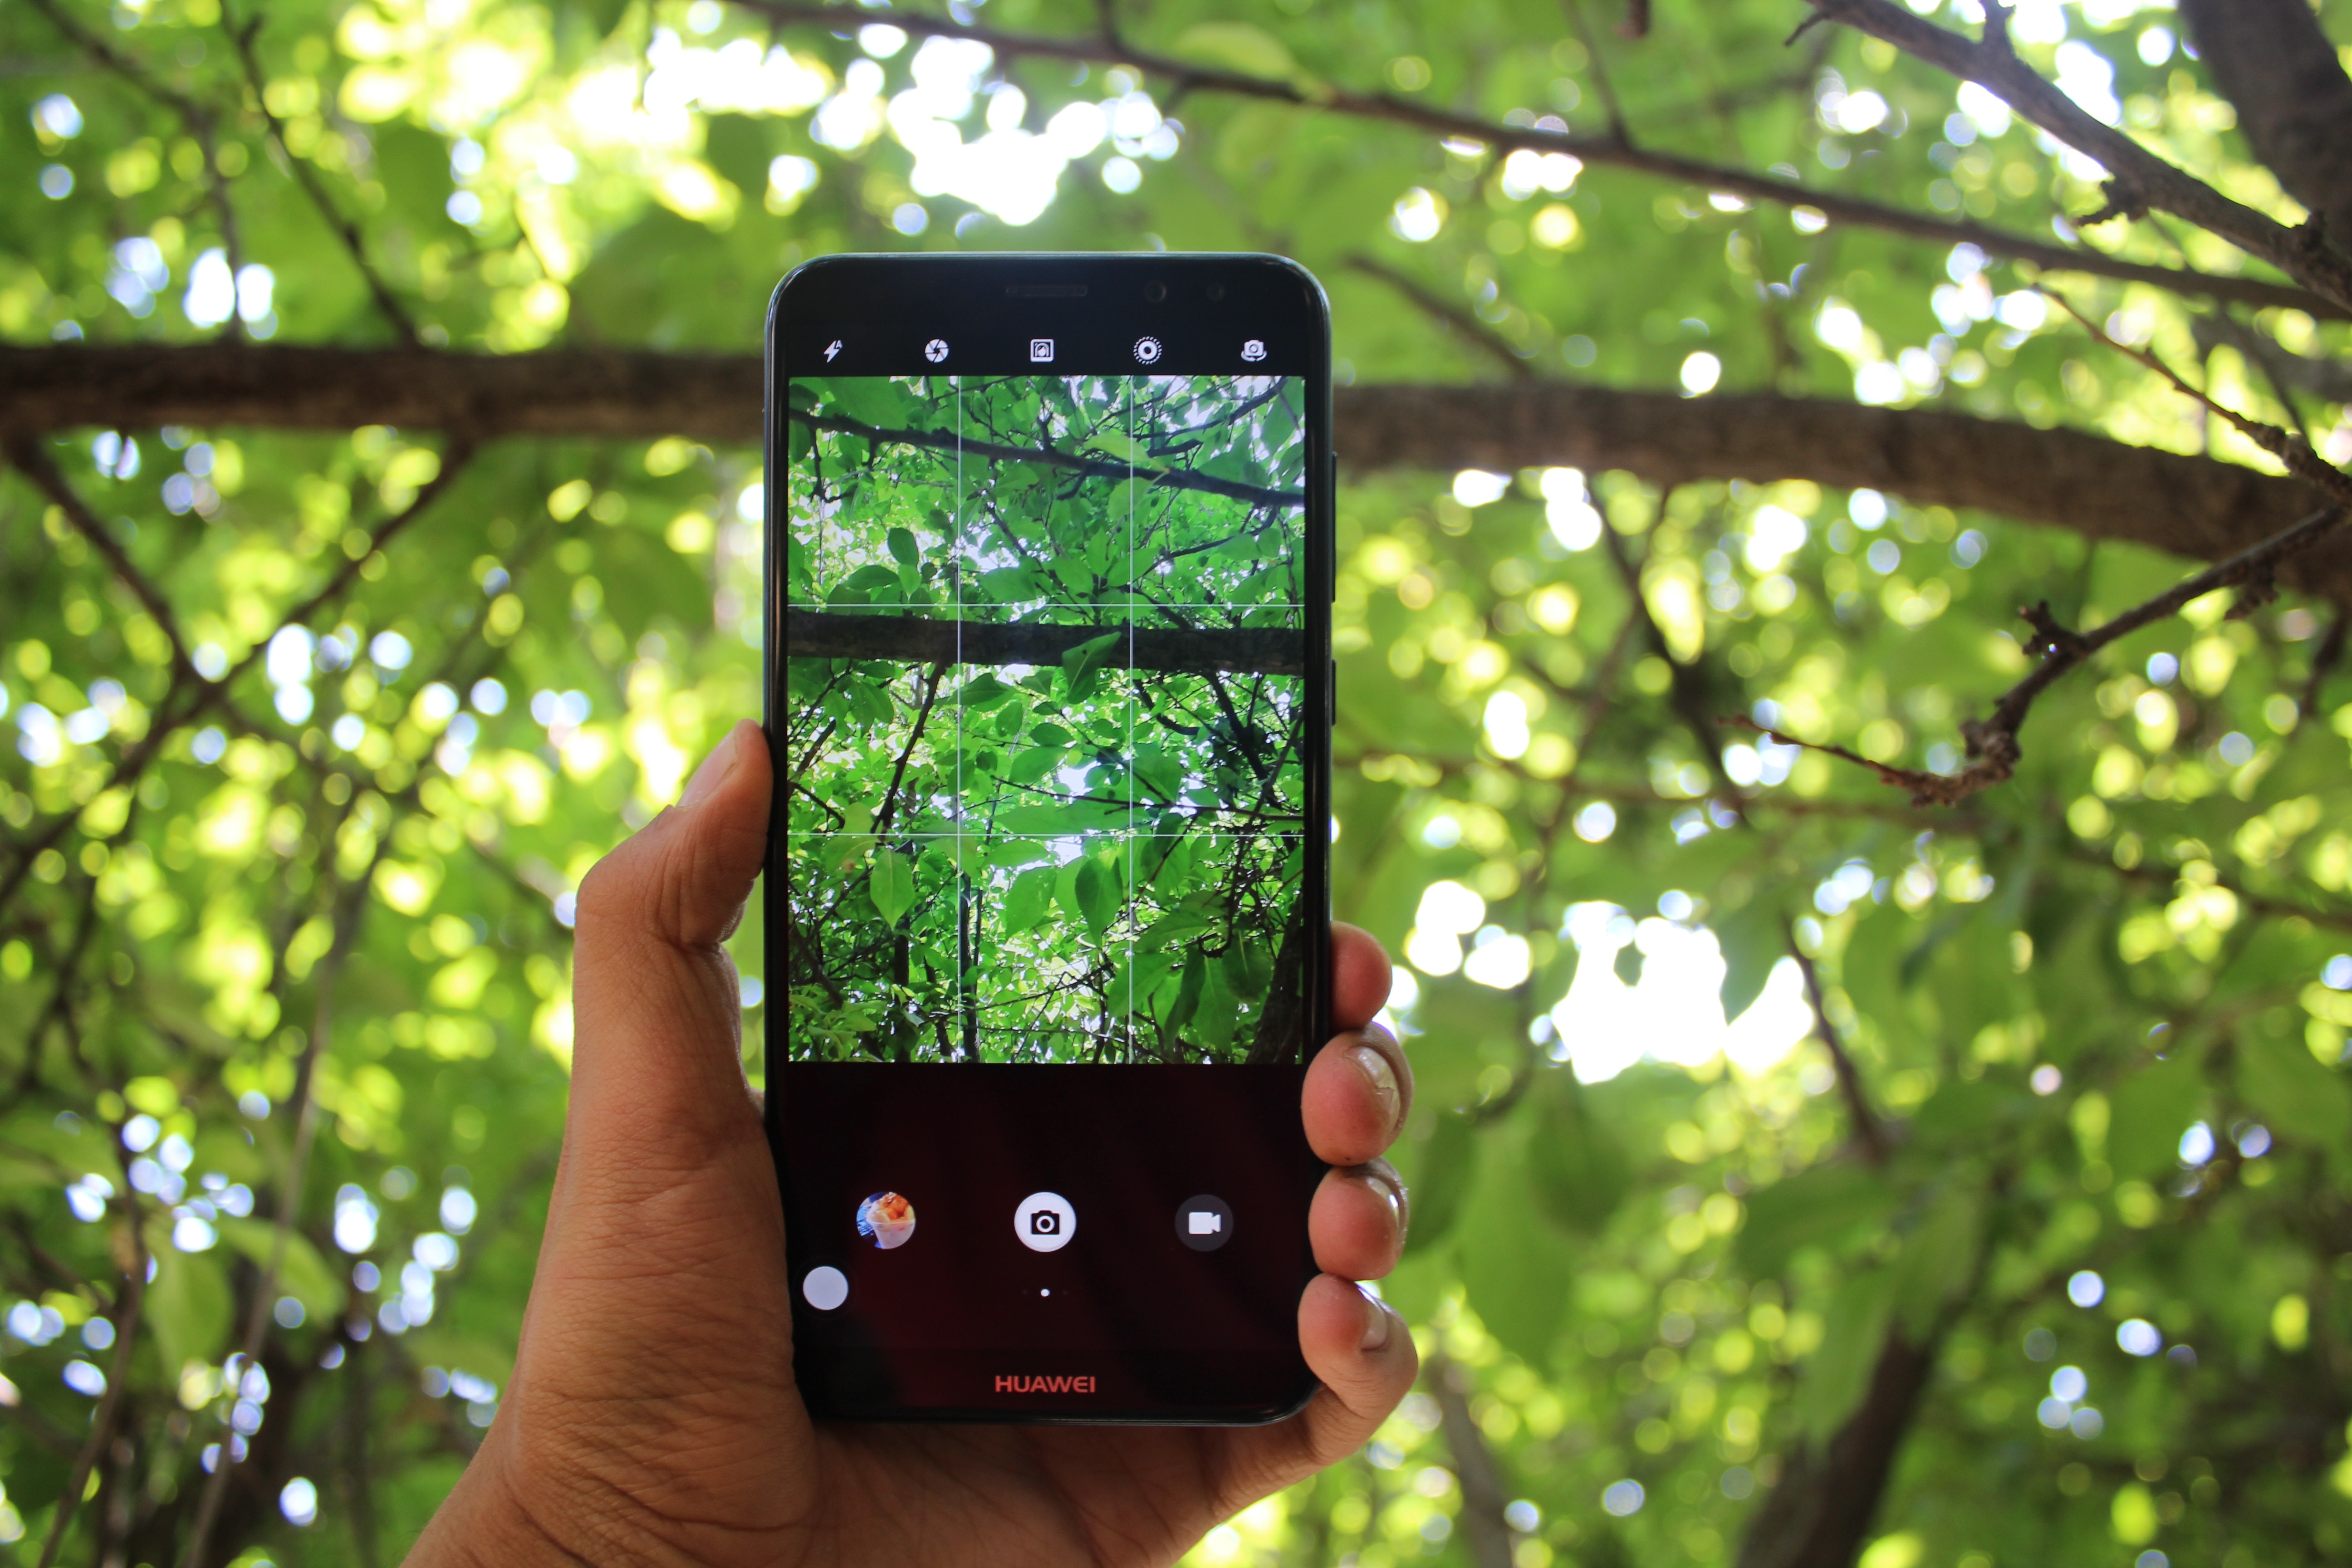 Käsi pitelee mobiililaitetta, jonka näytöllä näkyy taustalla oleva metsä.